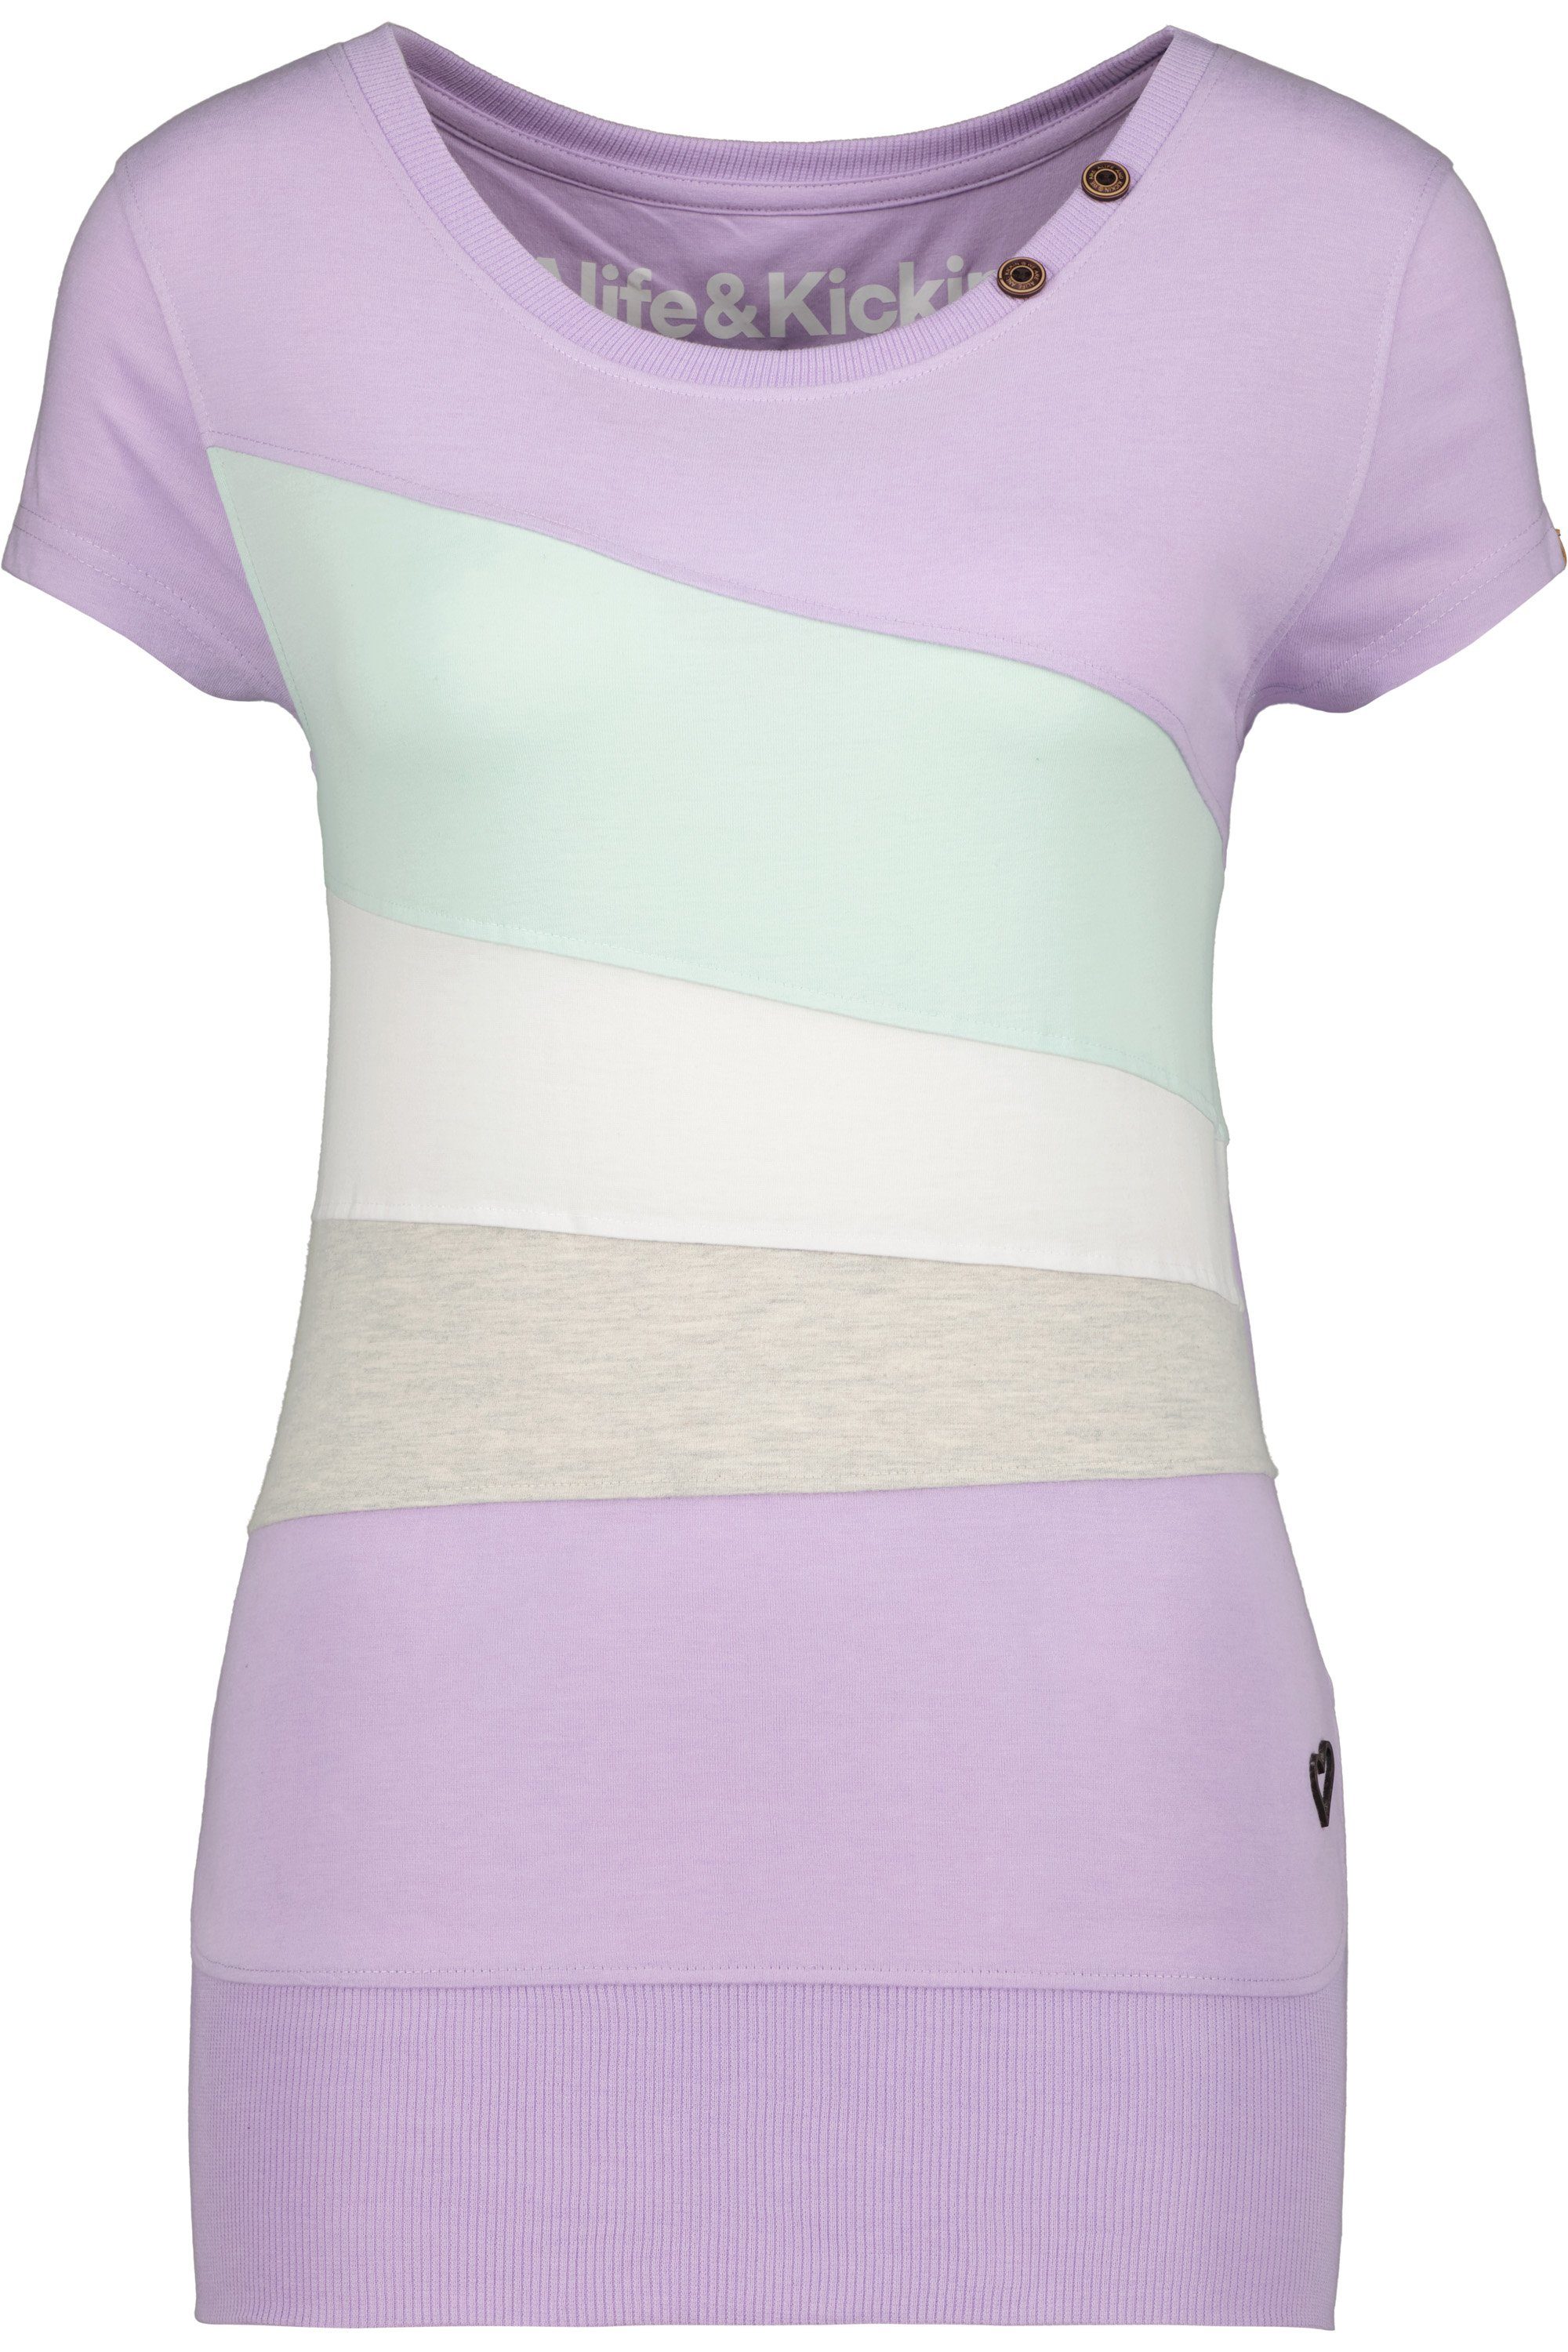 Alife & Kickin Rundhalsshirt ClementinaAK Kurzarmshirt, Shirt A lavender Shirt digital melange Damen